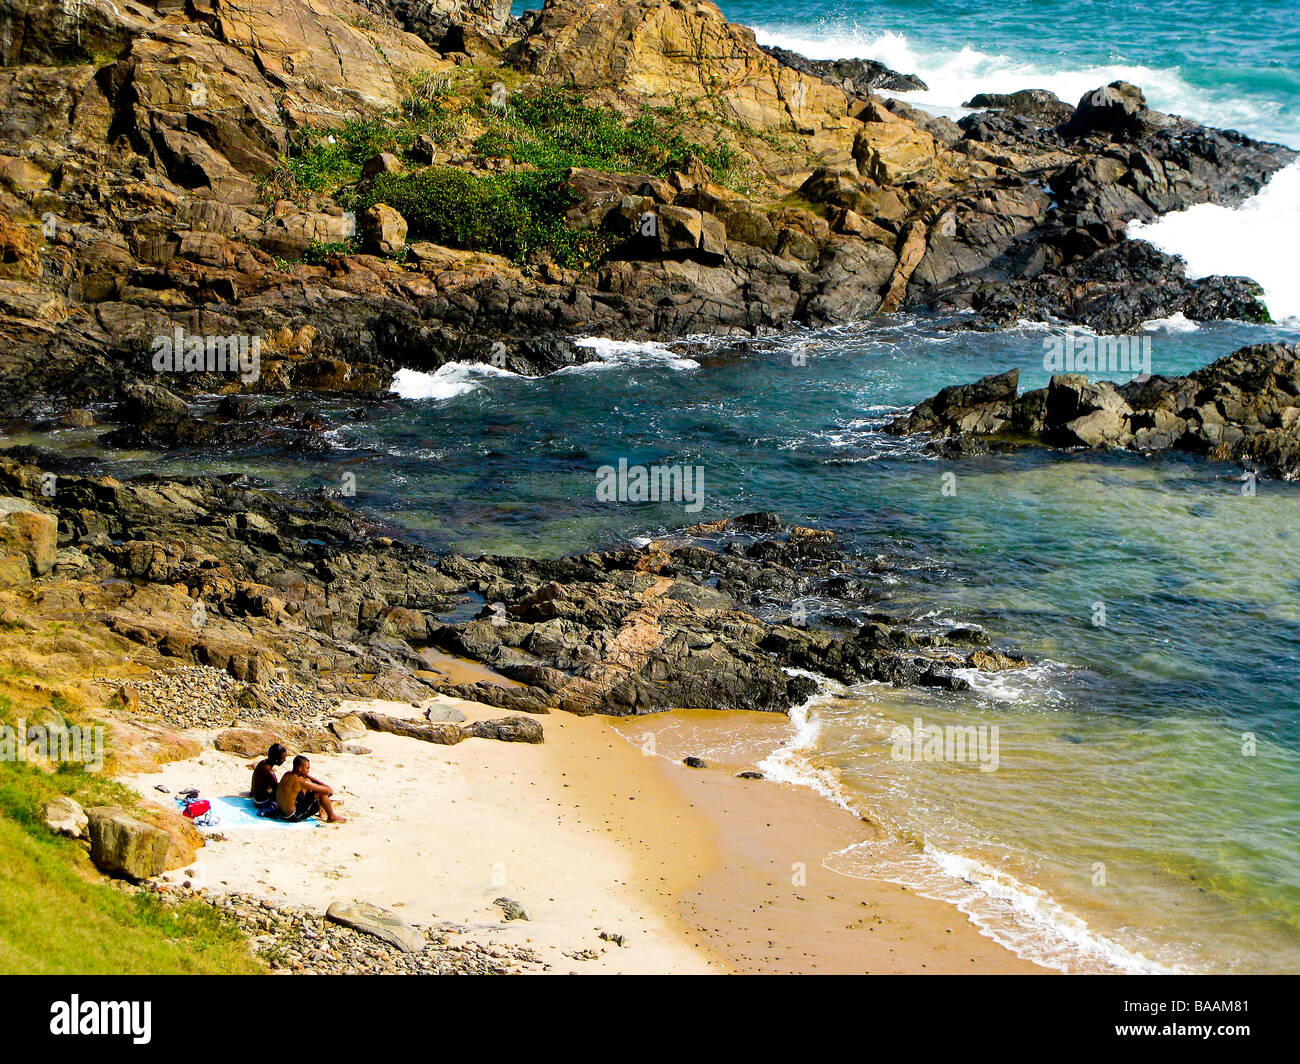 Cove and inlet along Porto da Barra beach, Salvador de Bahia, Brazil Stock Photo